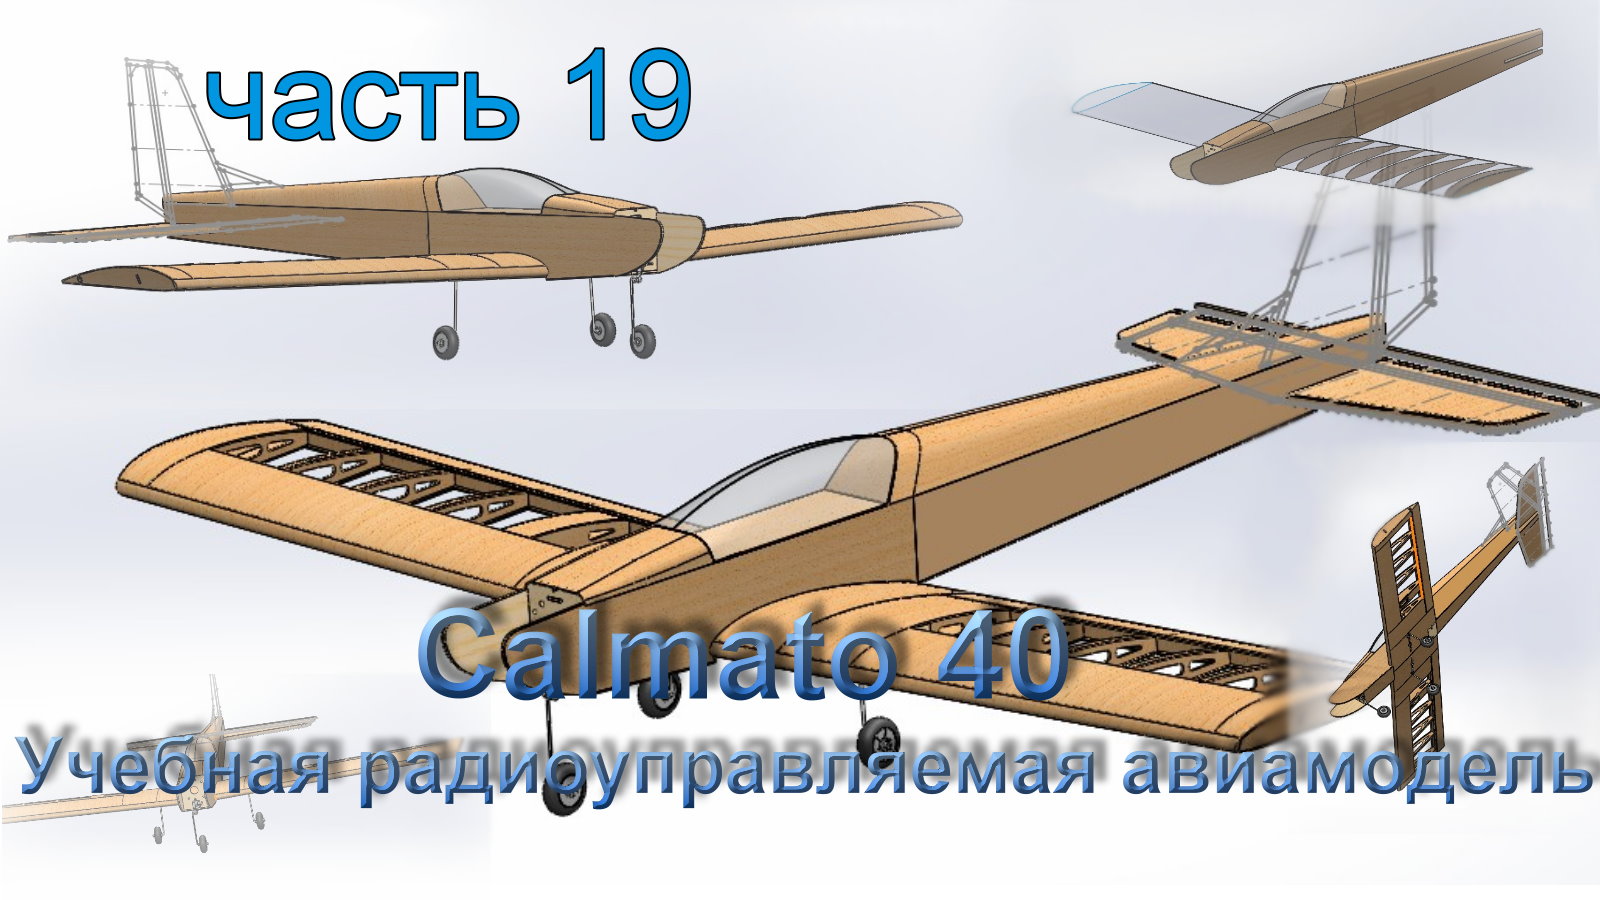 Учебная радиоуправляемая авиамодель Calmato 40 (часть 19)